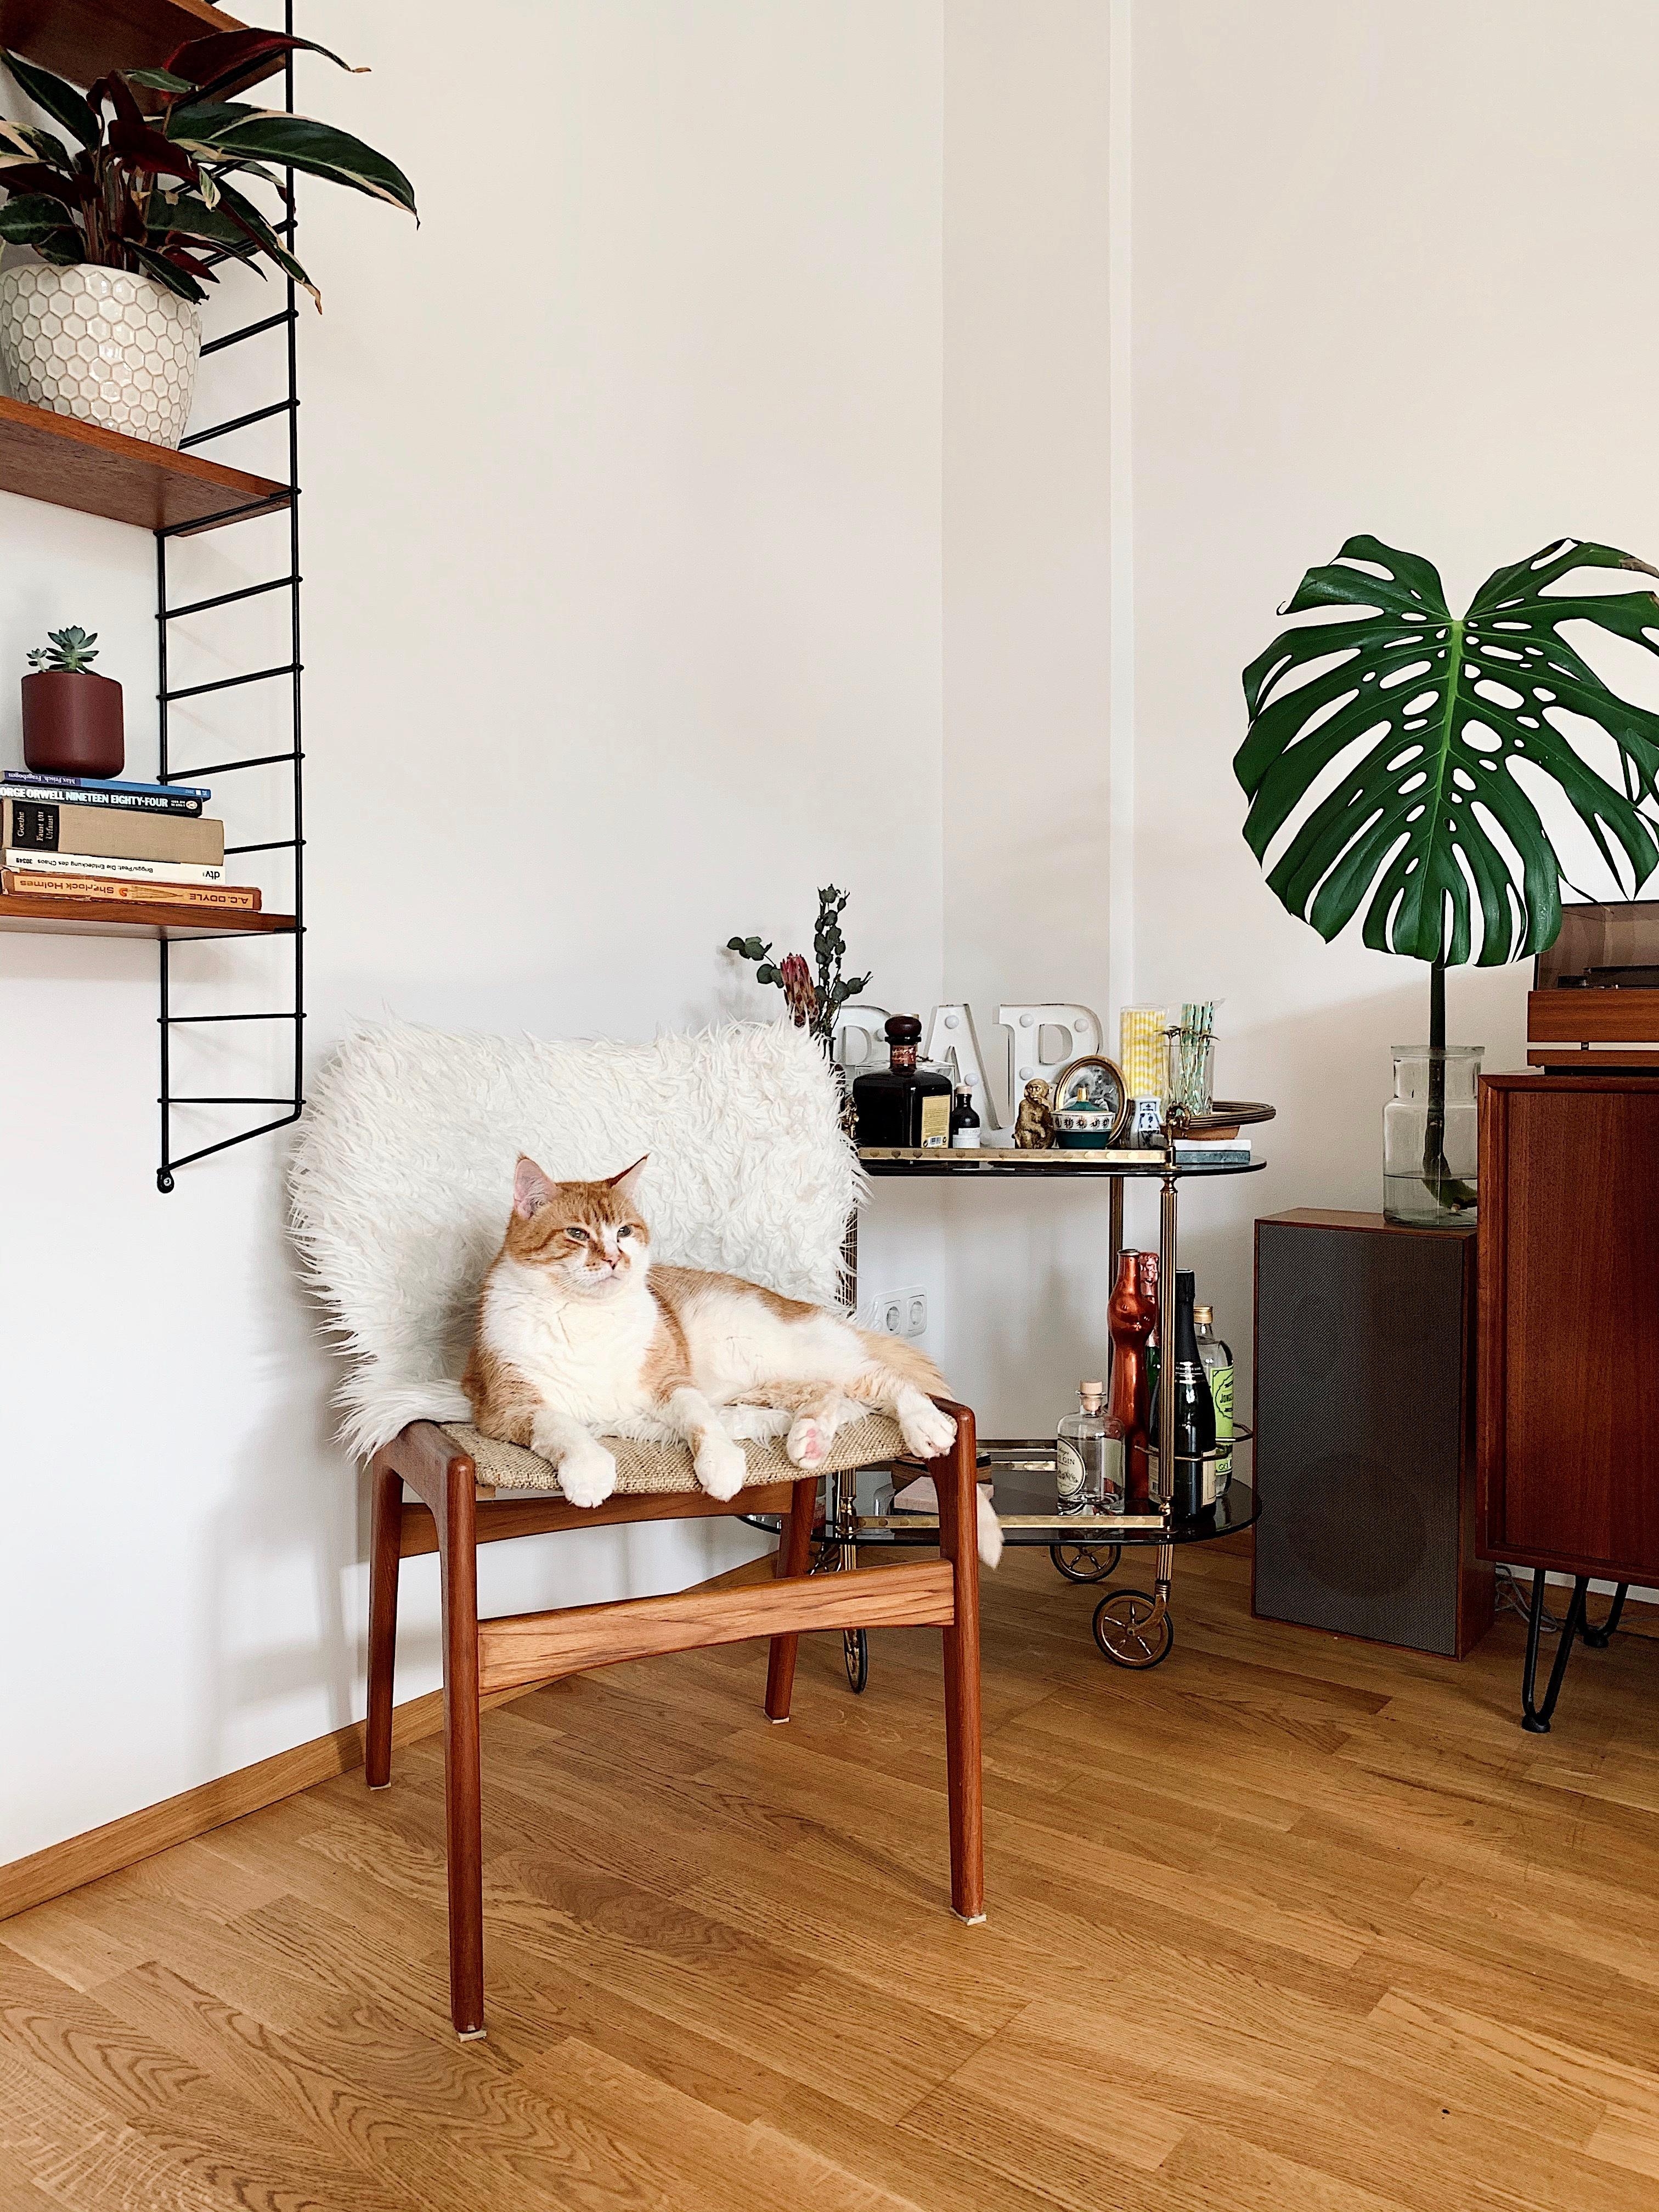 Darf ich vorstellen, Pettersson - offizieller Katzen-Stuhl-Tester.
#vintagefund#danishdesign#stuhlliebe